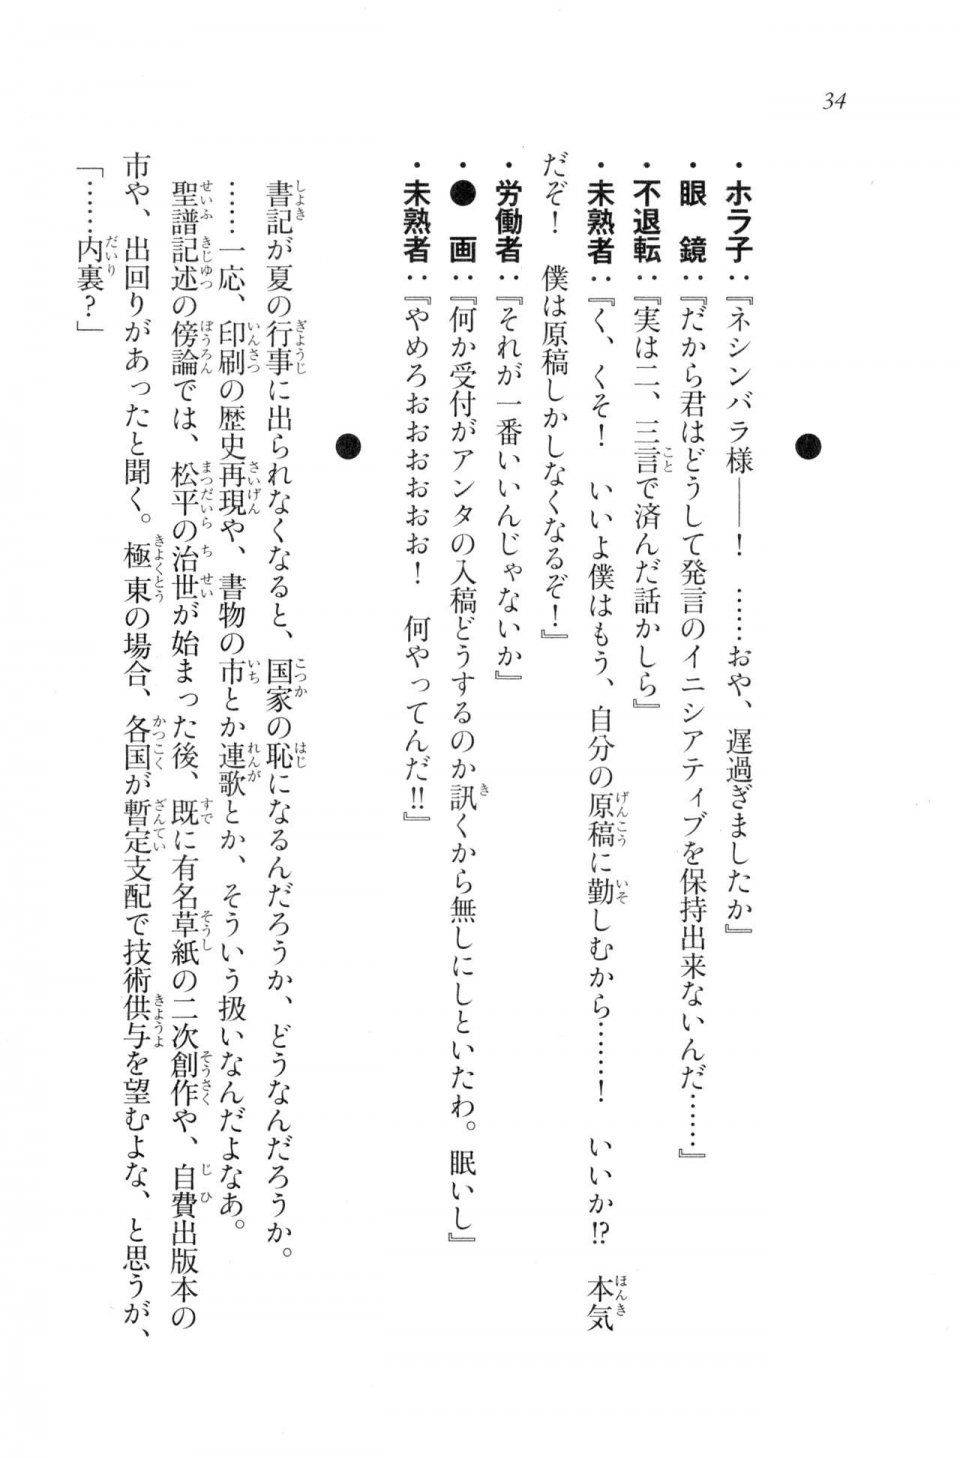 Kyoukai Senjou no Horizon LN Vol 20(8B) - Photo #34